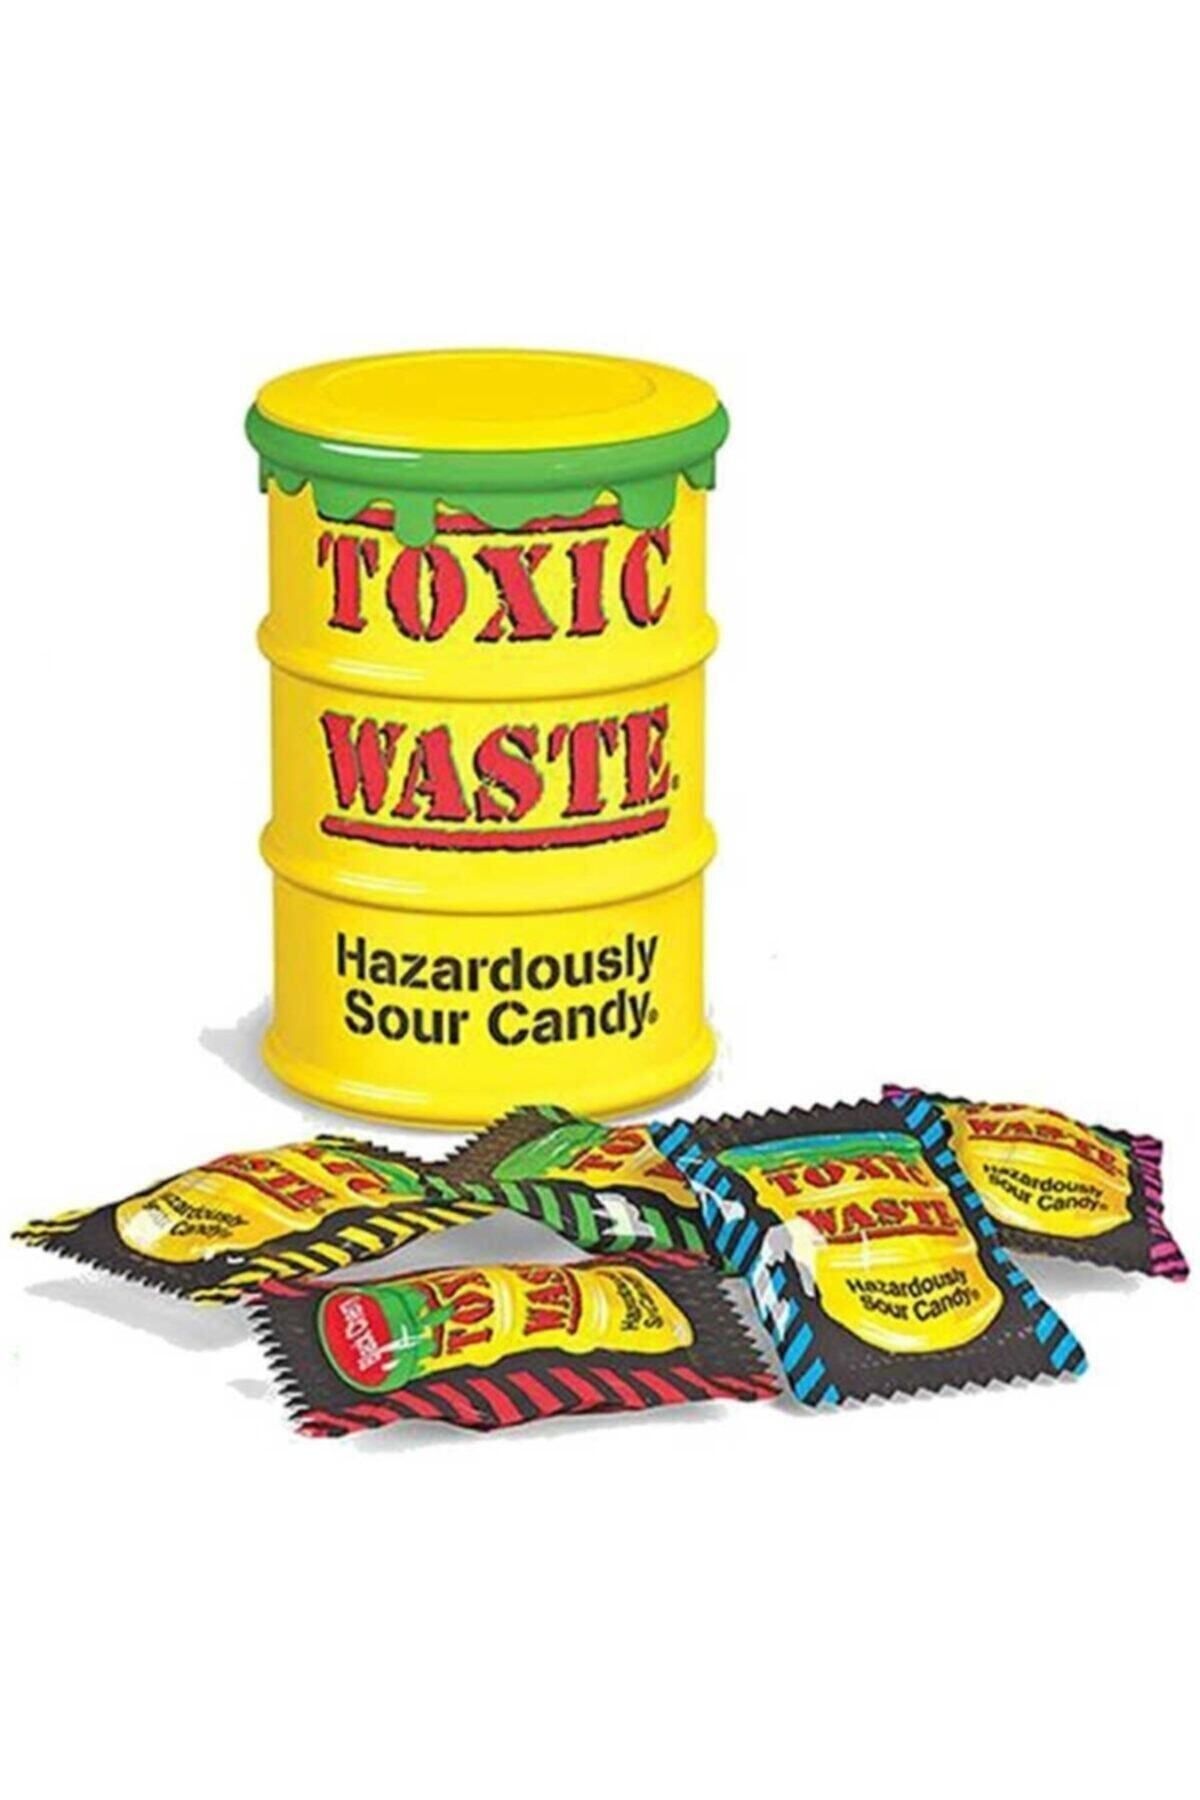 Токсик ттд. Toxic waste конфеты. Кислые конфеты Токсик. Кислые конфеты Toxic waste. Токсик Вейст самые кислые конфеты.